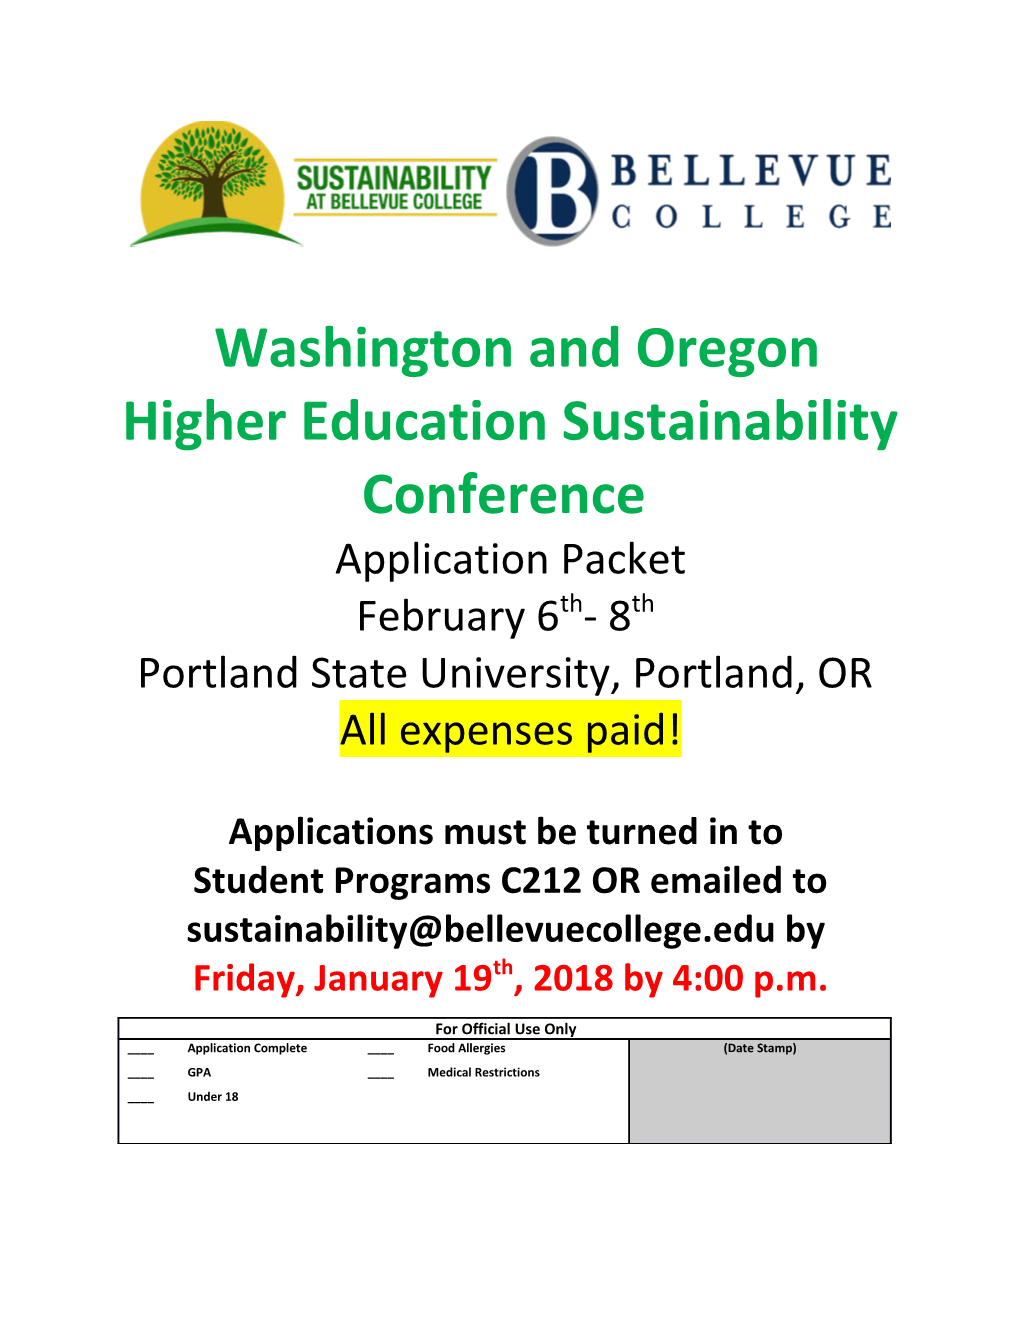 Washington and Oregon Higher Education Sustainability Conference